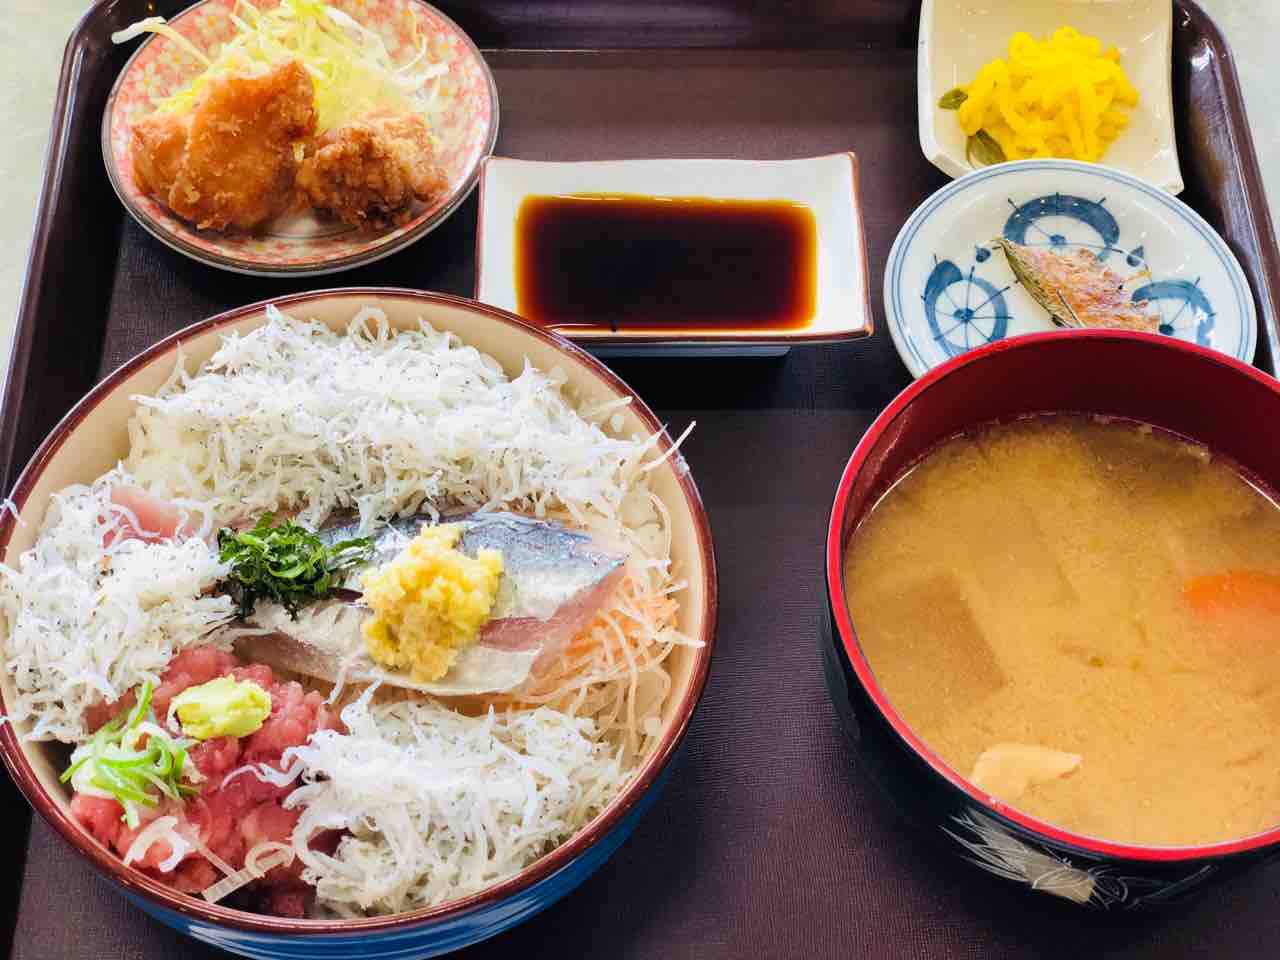 大人の横浜デート アウトレットやコストコに行ったらランチは南部市場の 市場飯 がお勧め 横浜dinks生活